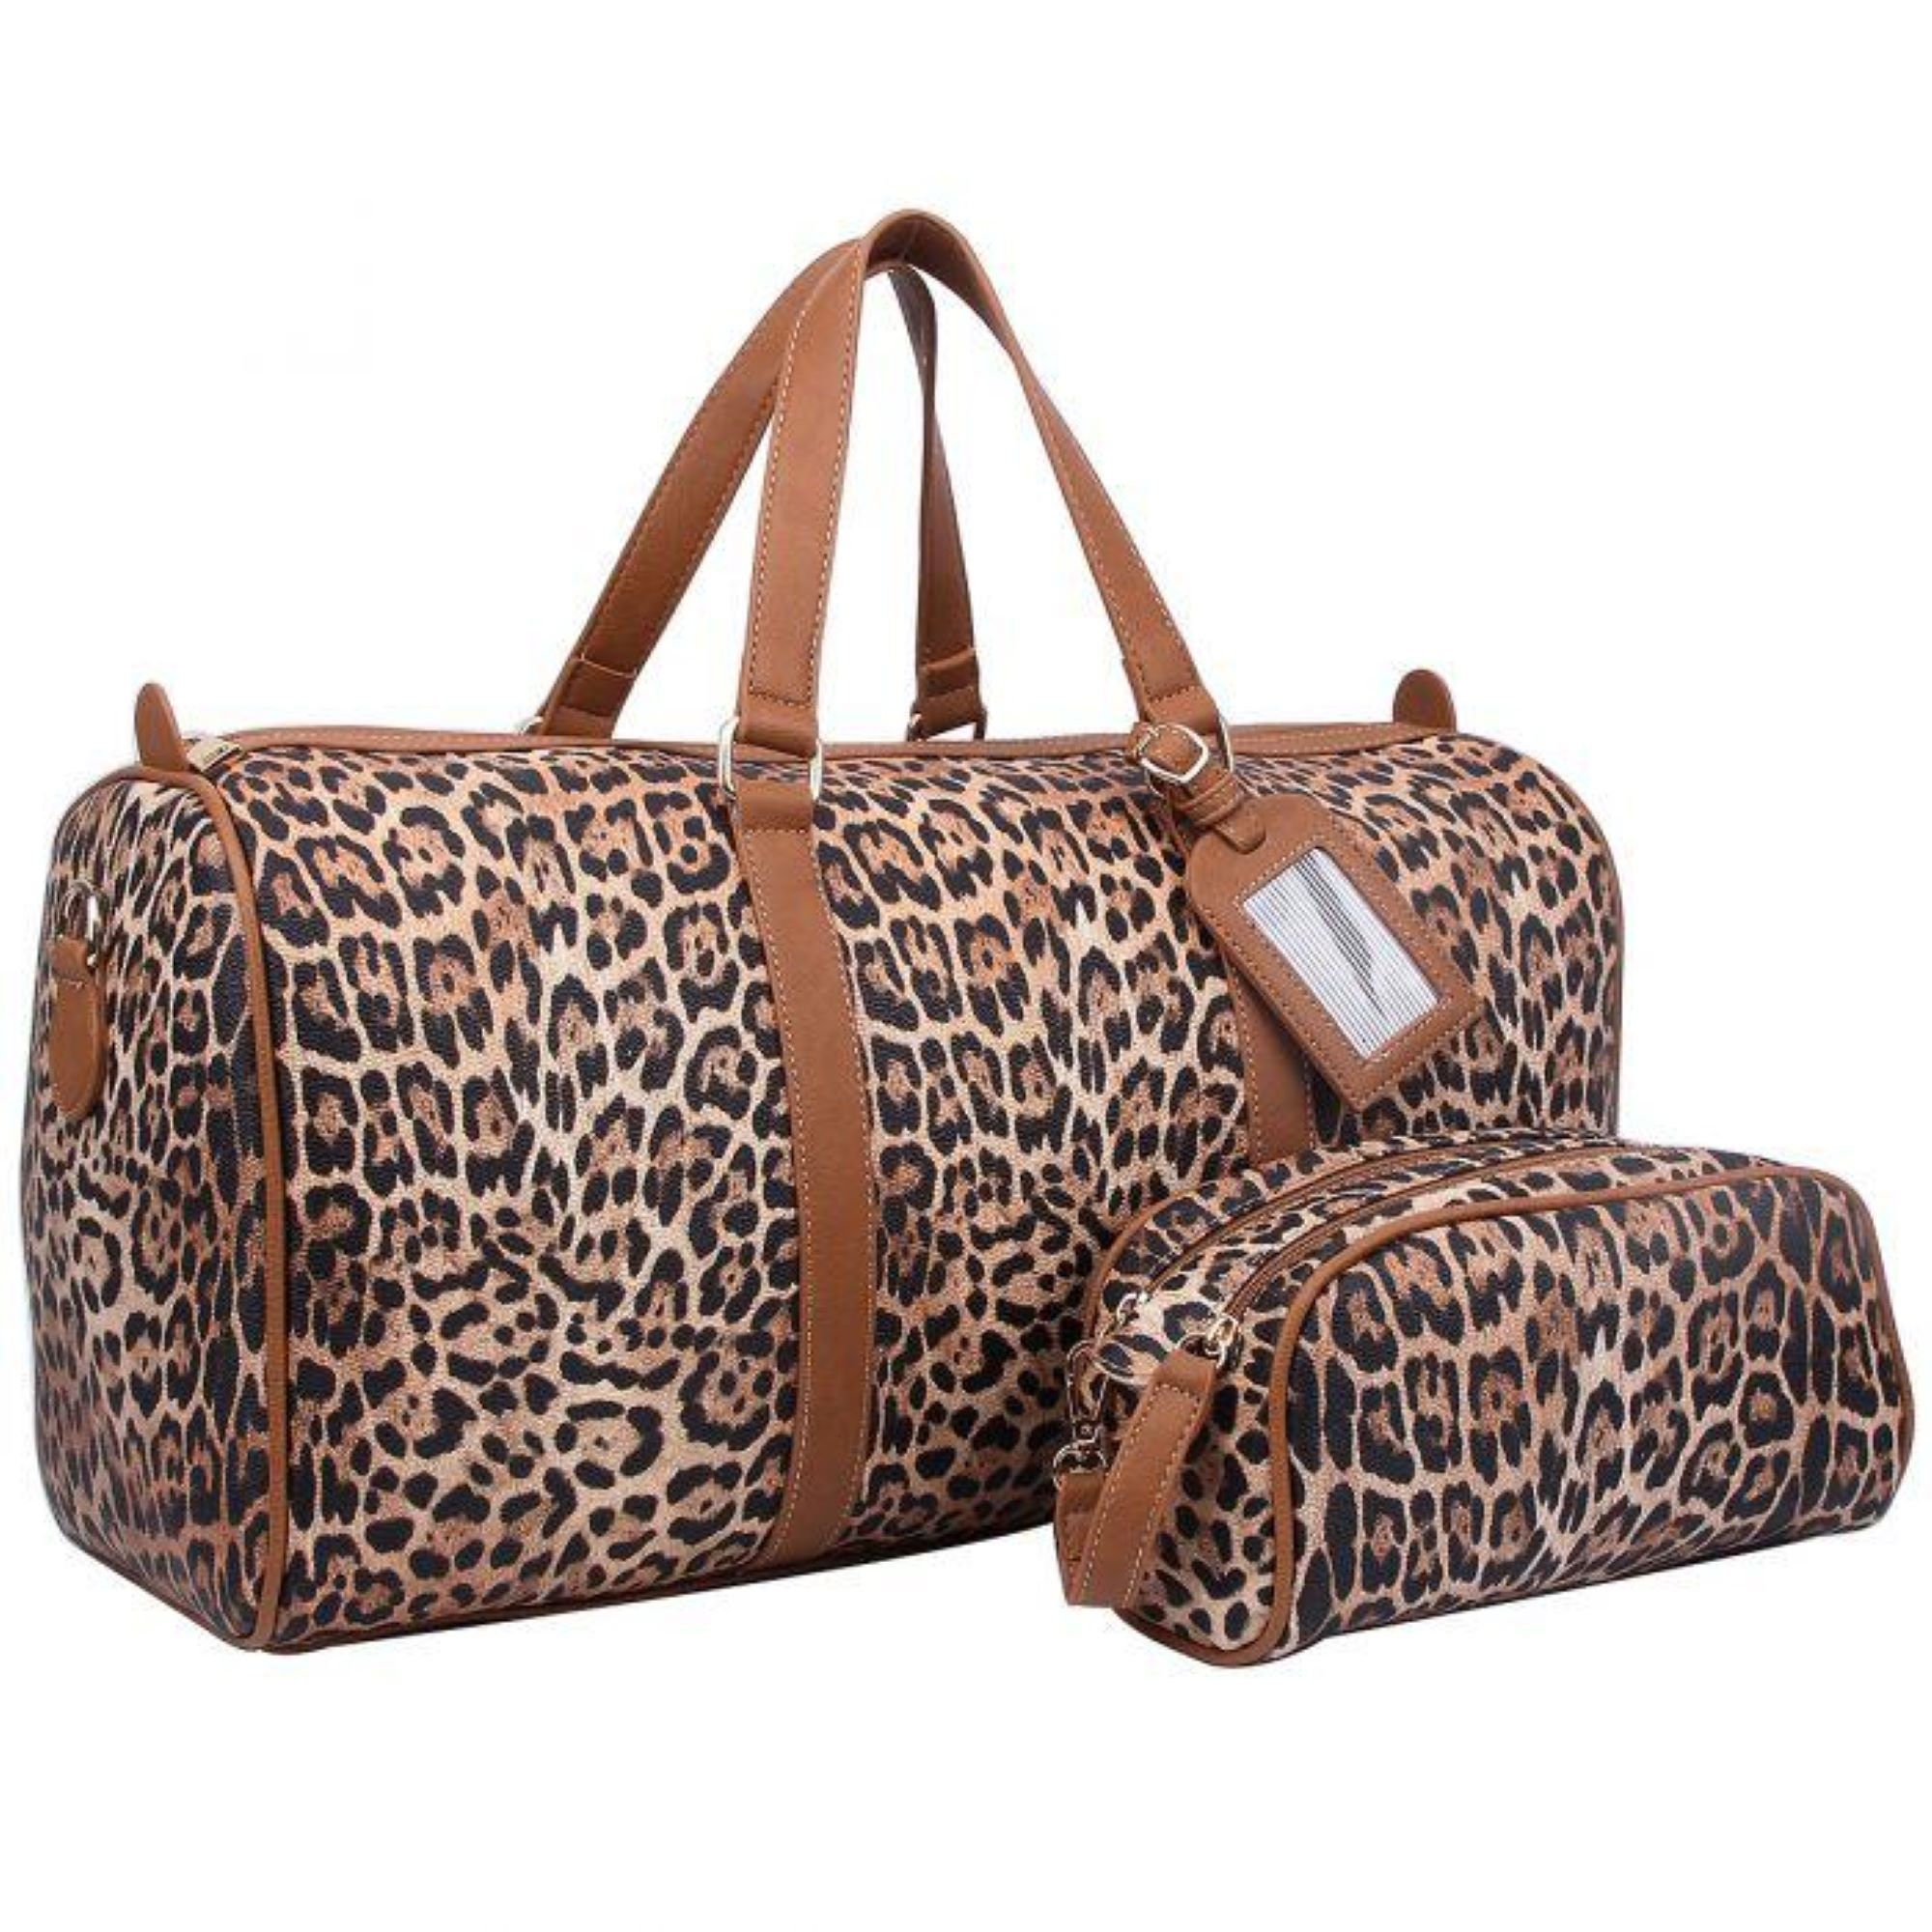 Gemonogrammeerde Cheetah Overnight Duffel Bag MonogramMed Brown Leopard Weekender Bag Tassen & portemonnees Bagage & Reizen Weekendtassen Gemonogrammeerde handbagage Gepersonaliseerde 